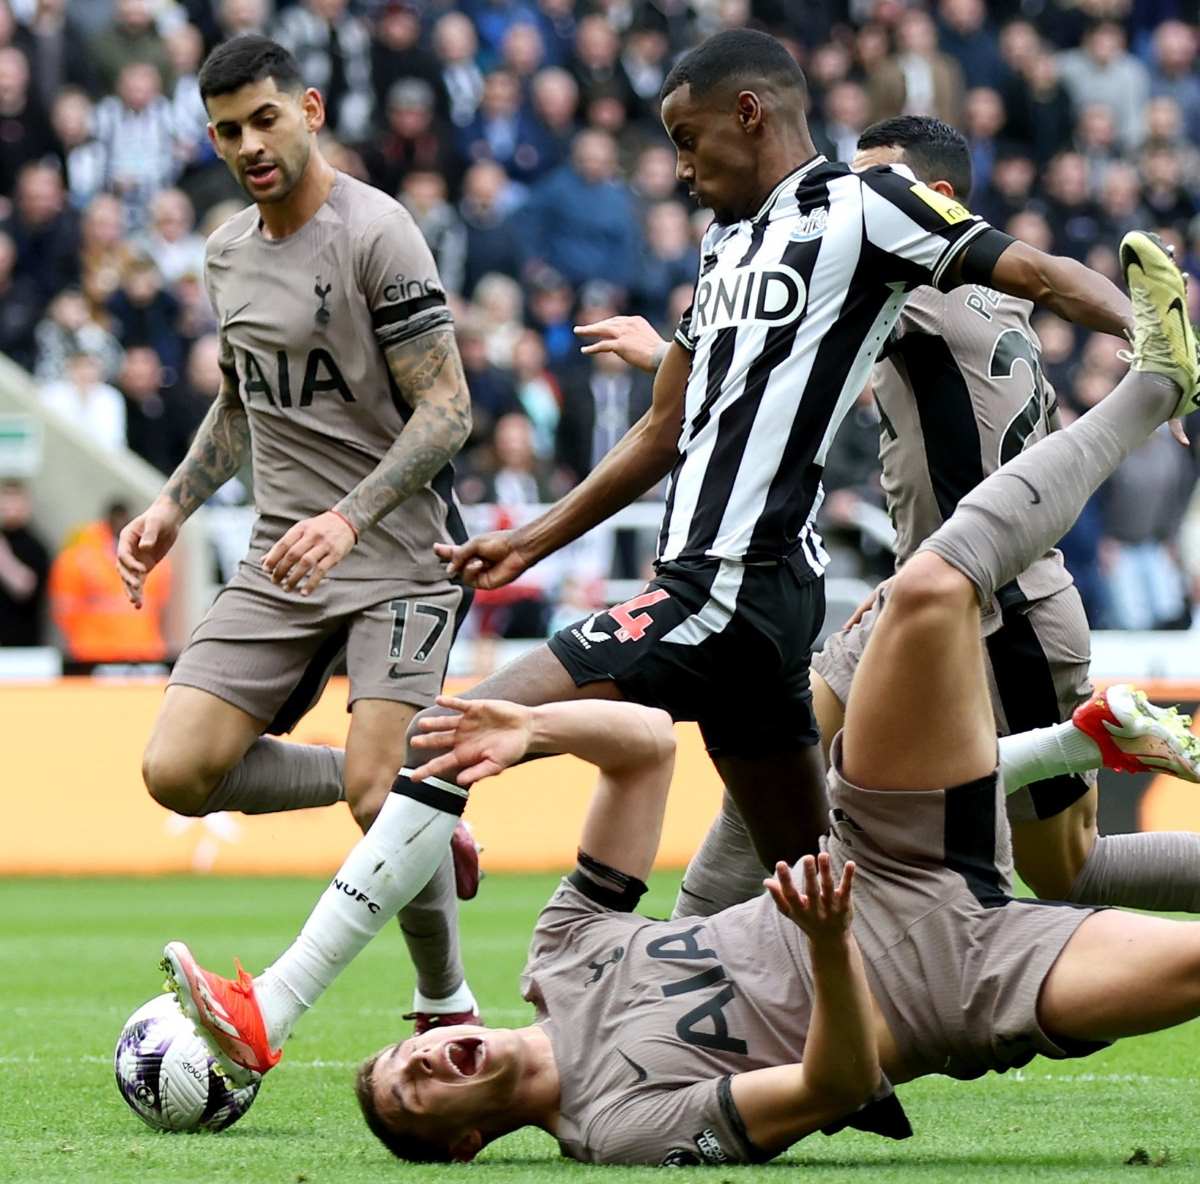 Newcastle ghi 2 bàn thắng chớp nhoáng trong hiệp 1 để nhấn chìm Tottenham. Ảnh: Newcastle